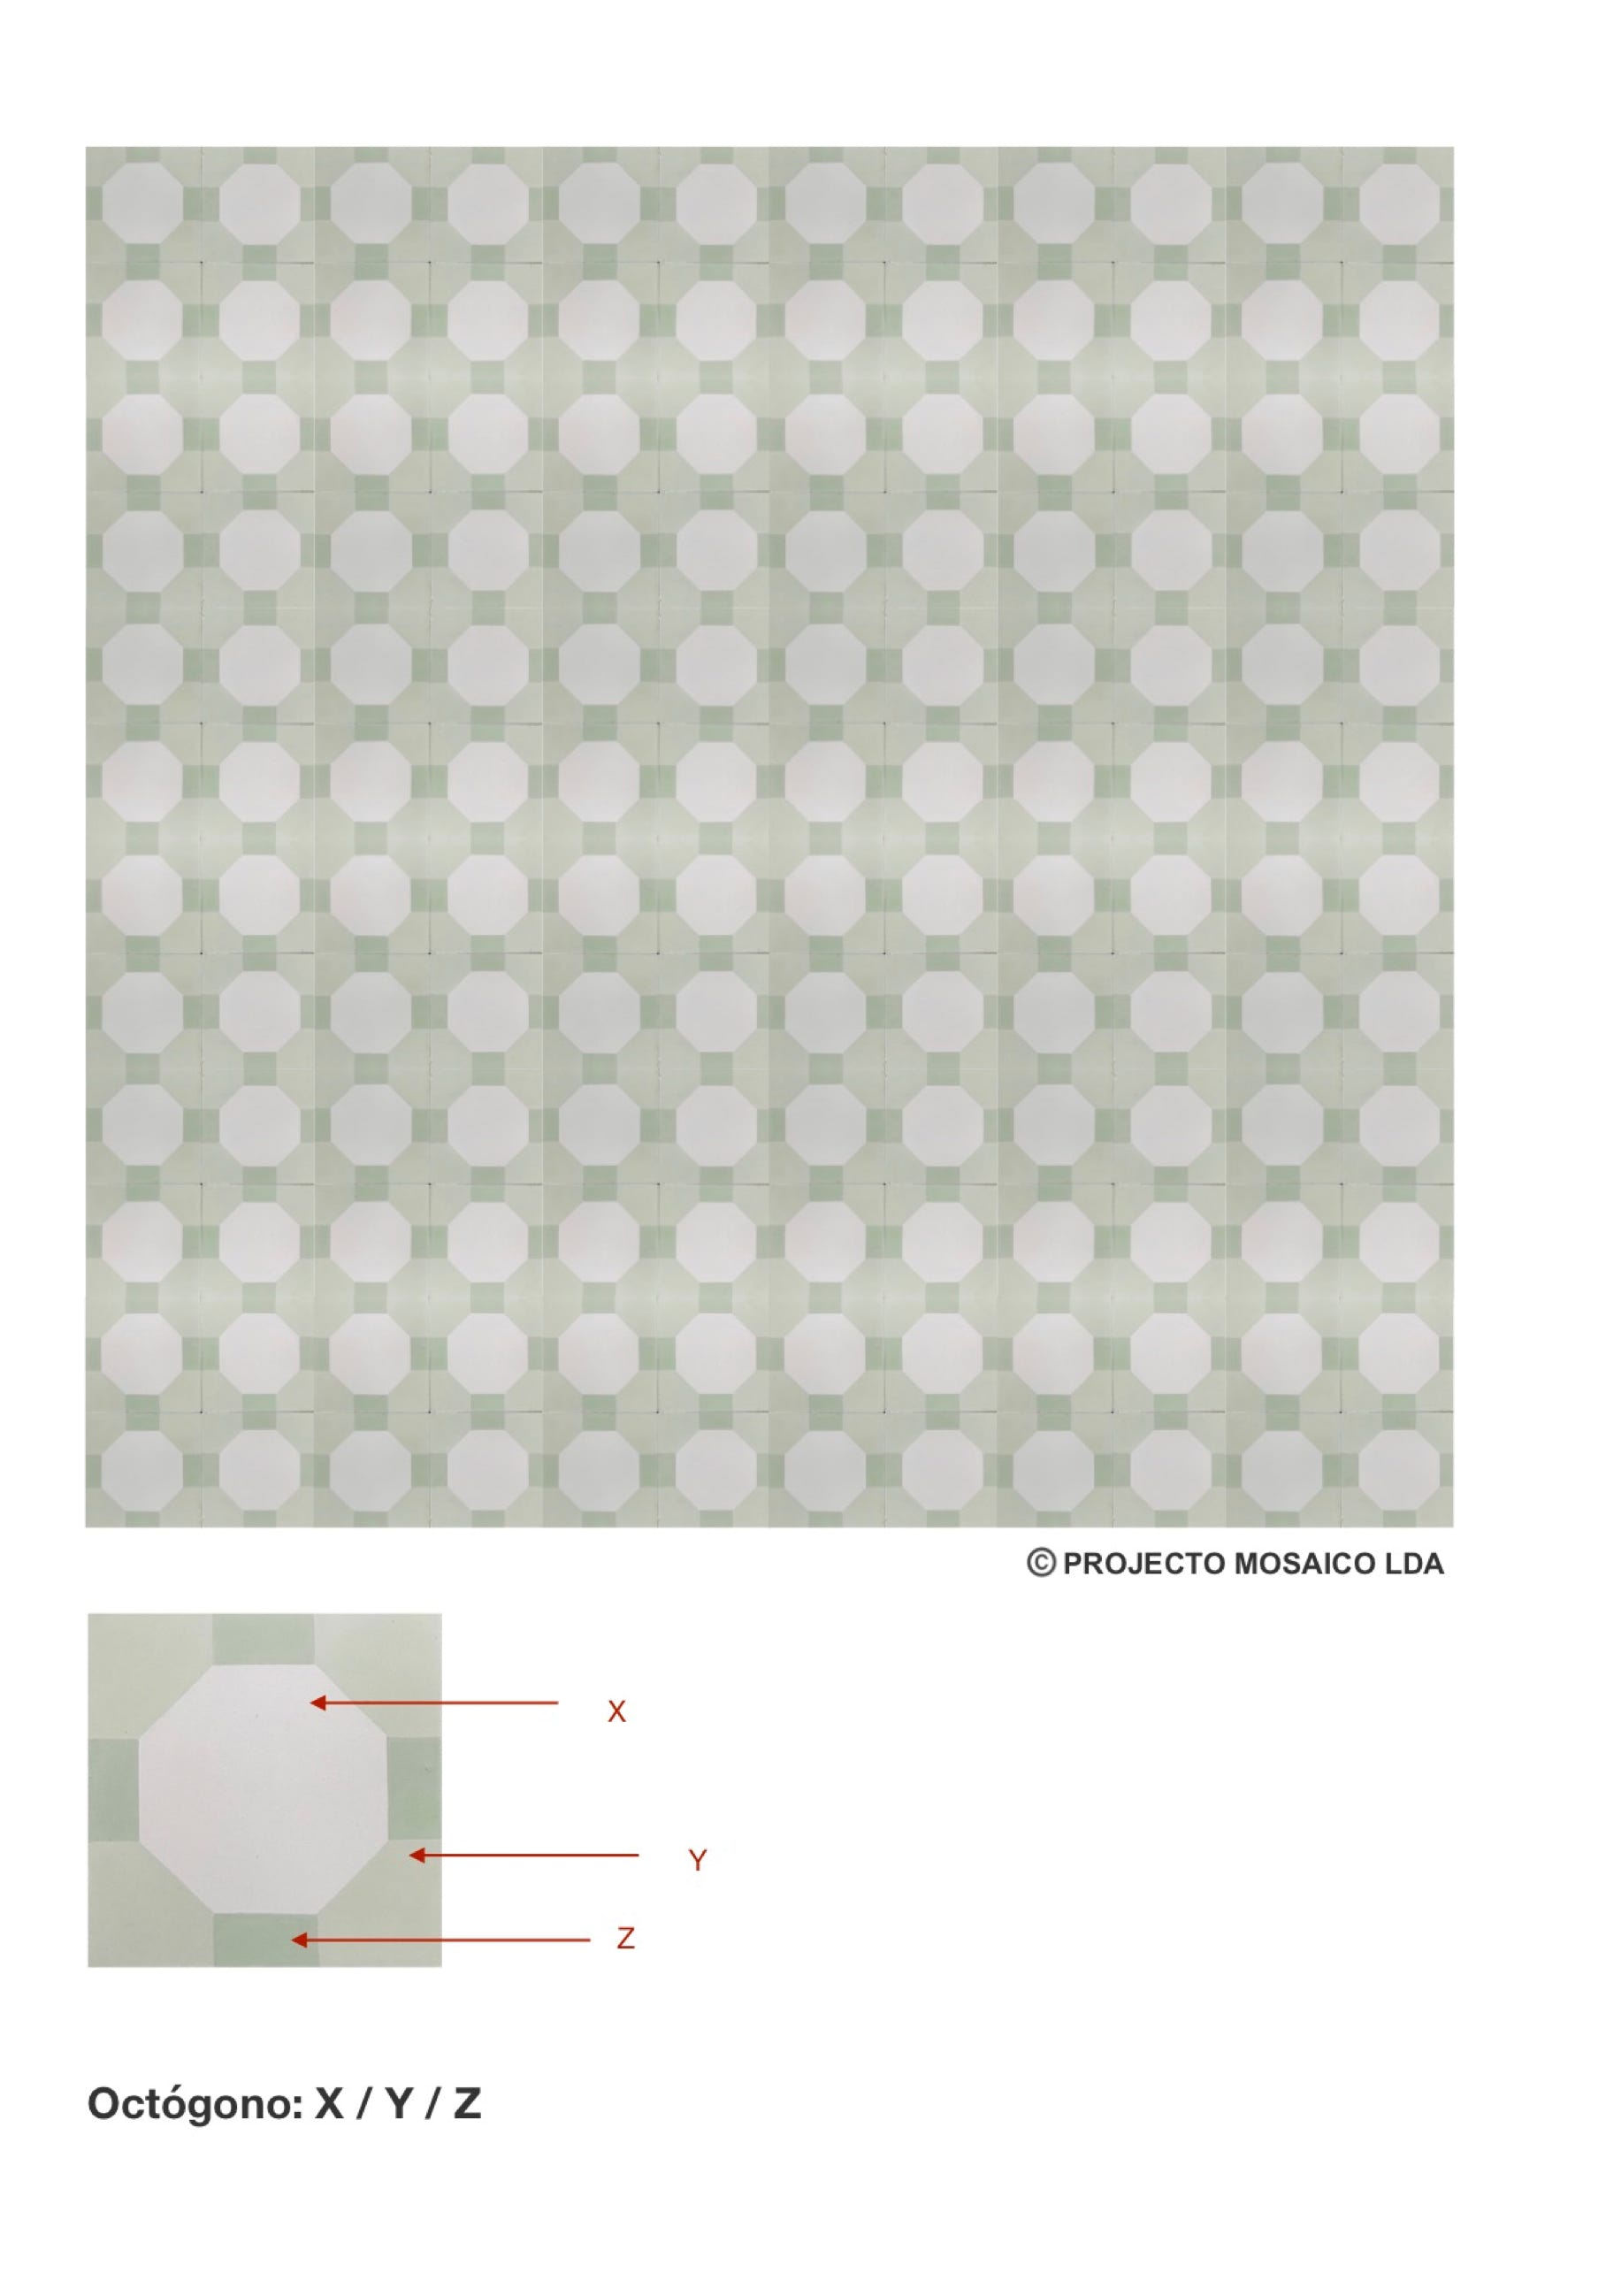 illustração de aplicação do mosaico hidráulico ref: Octógono